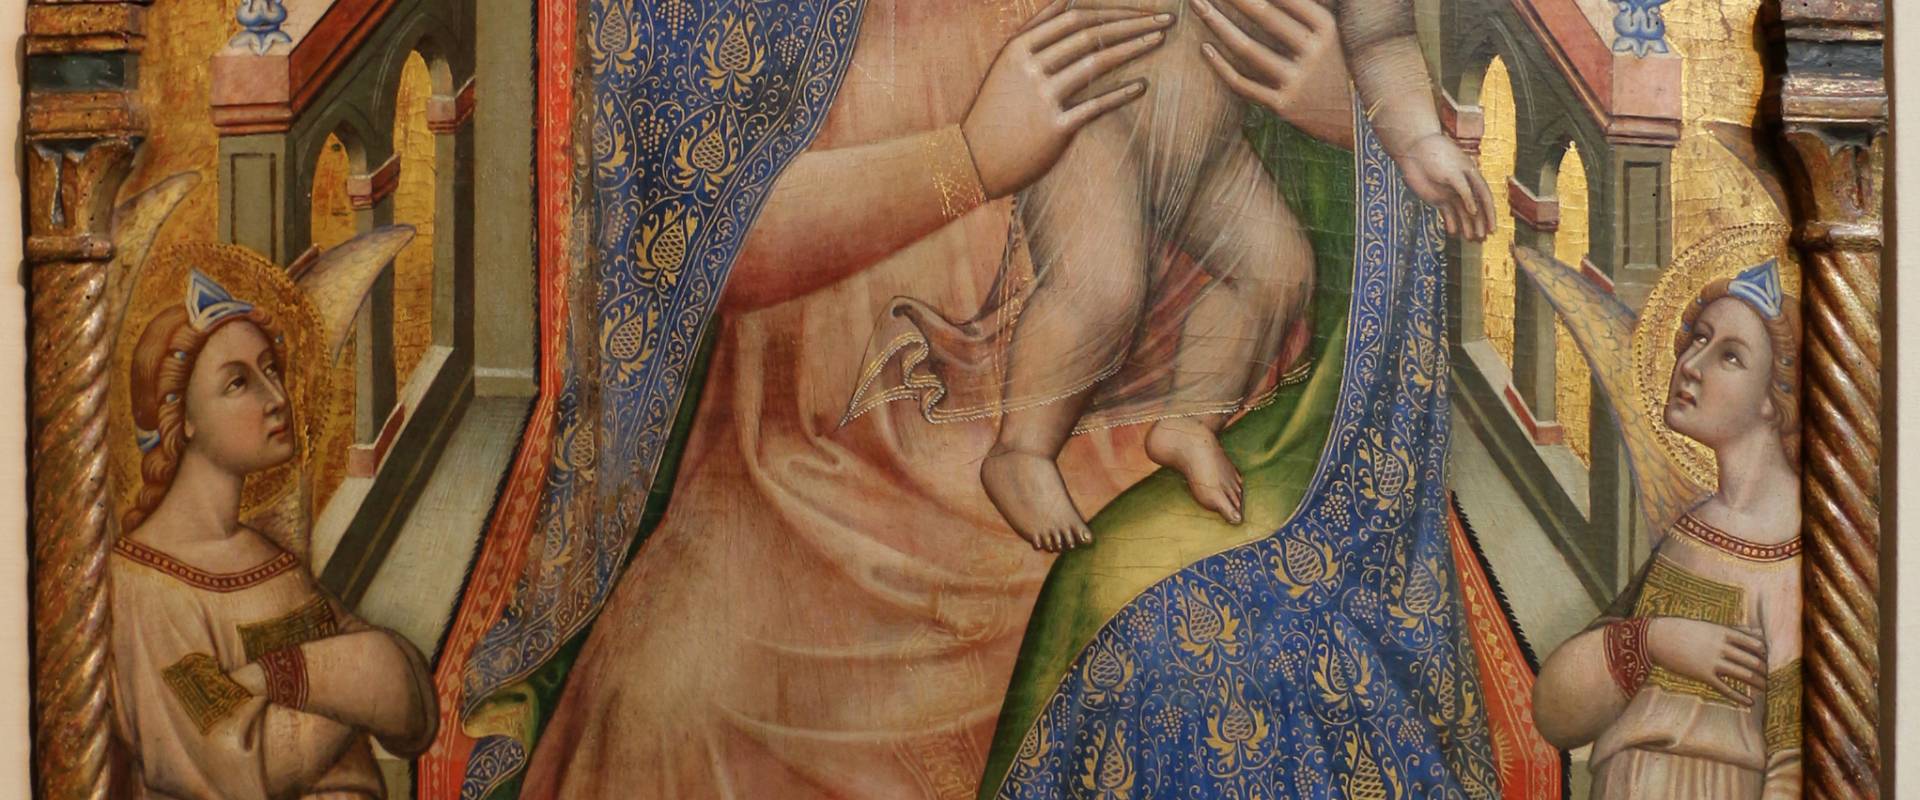 Simone dei crocifissi, madonna col bambino, angeli e il donatore giovanni da piacenza, 1378-80 ca., dalla madonna del monte 01 foto di Sailko